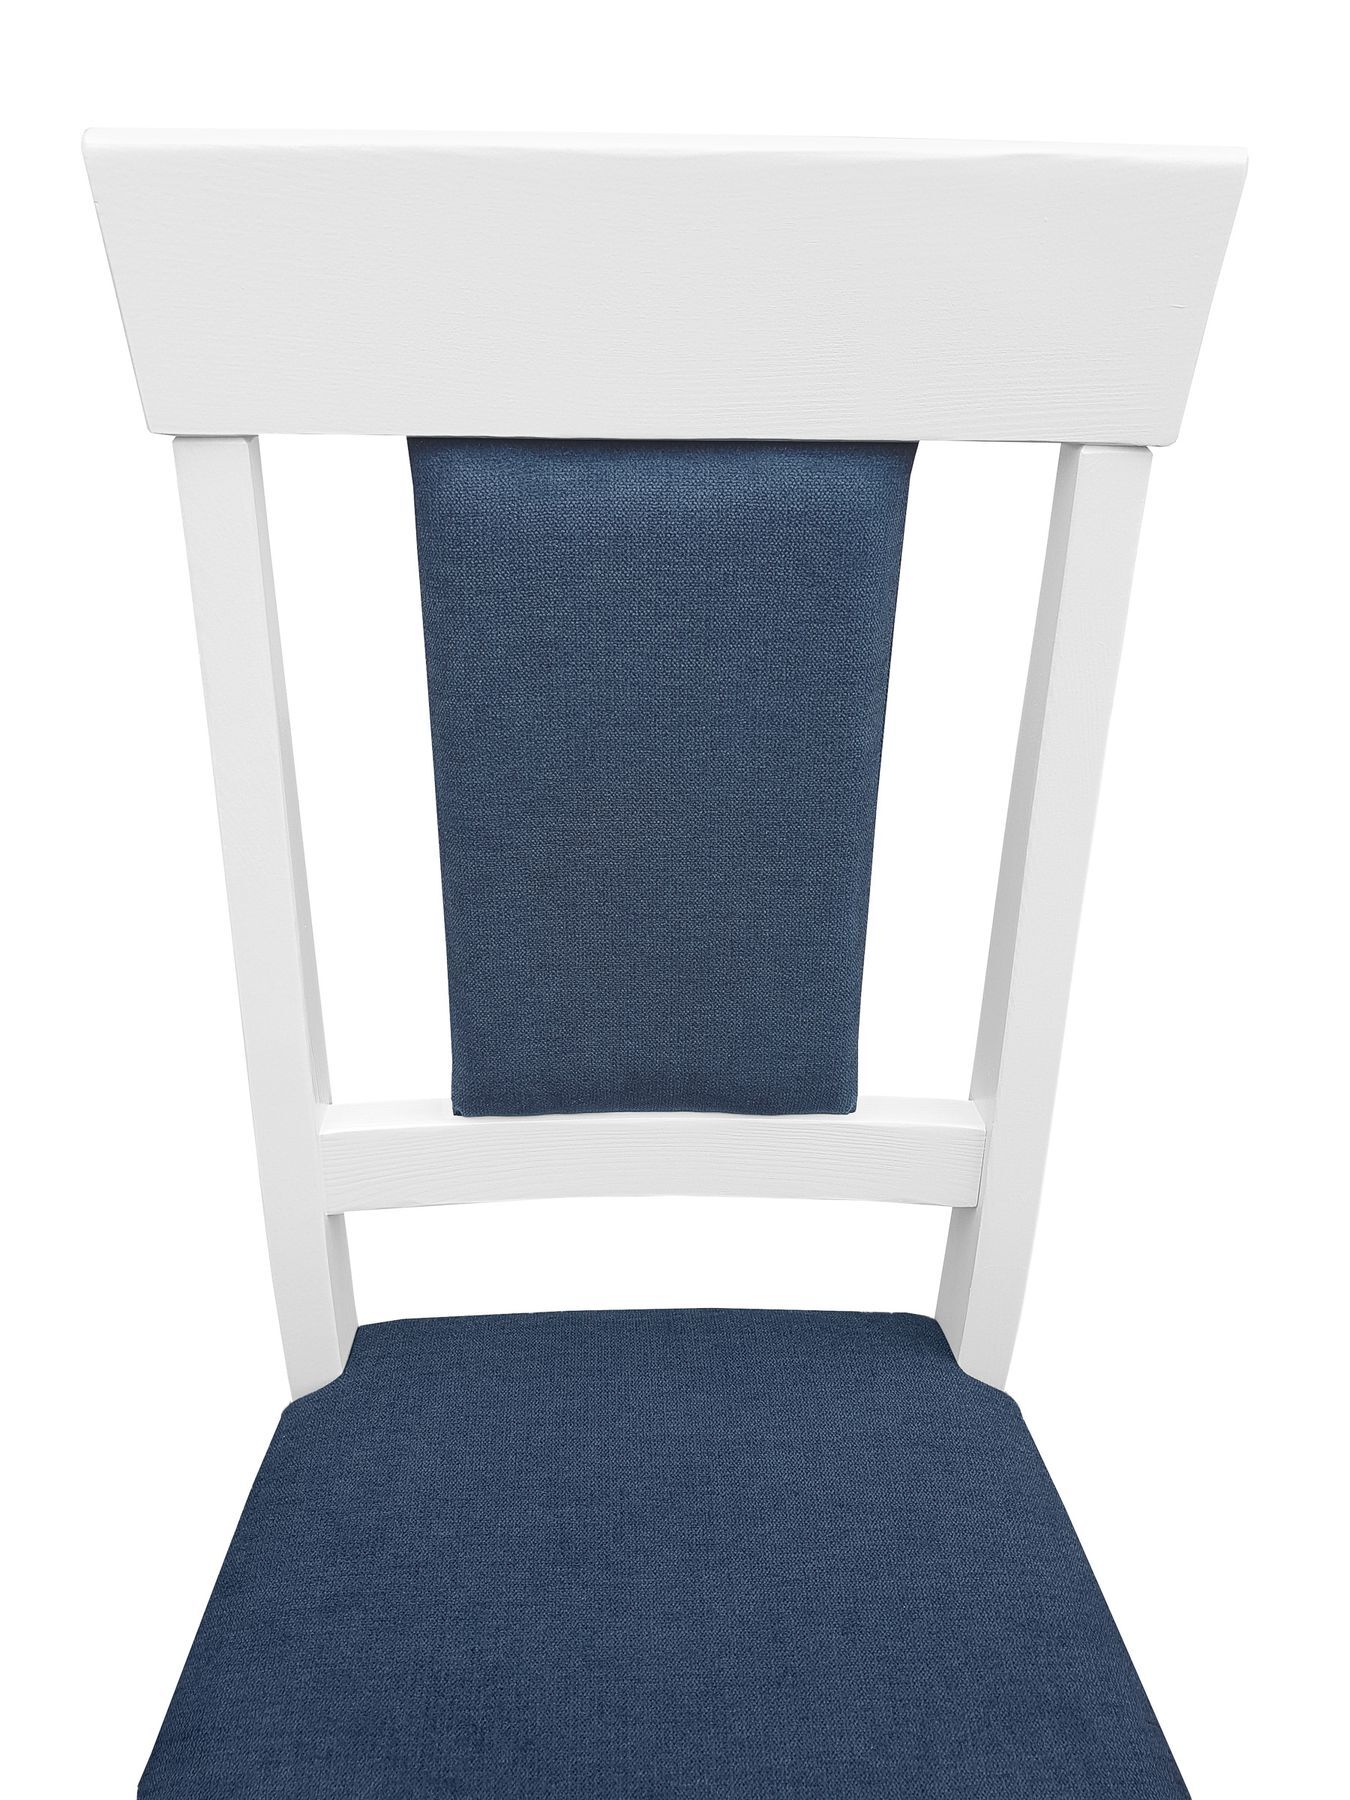 Lehne blau, weißer Stuhl